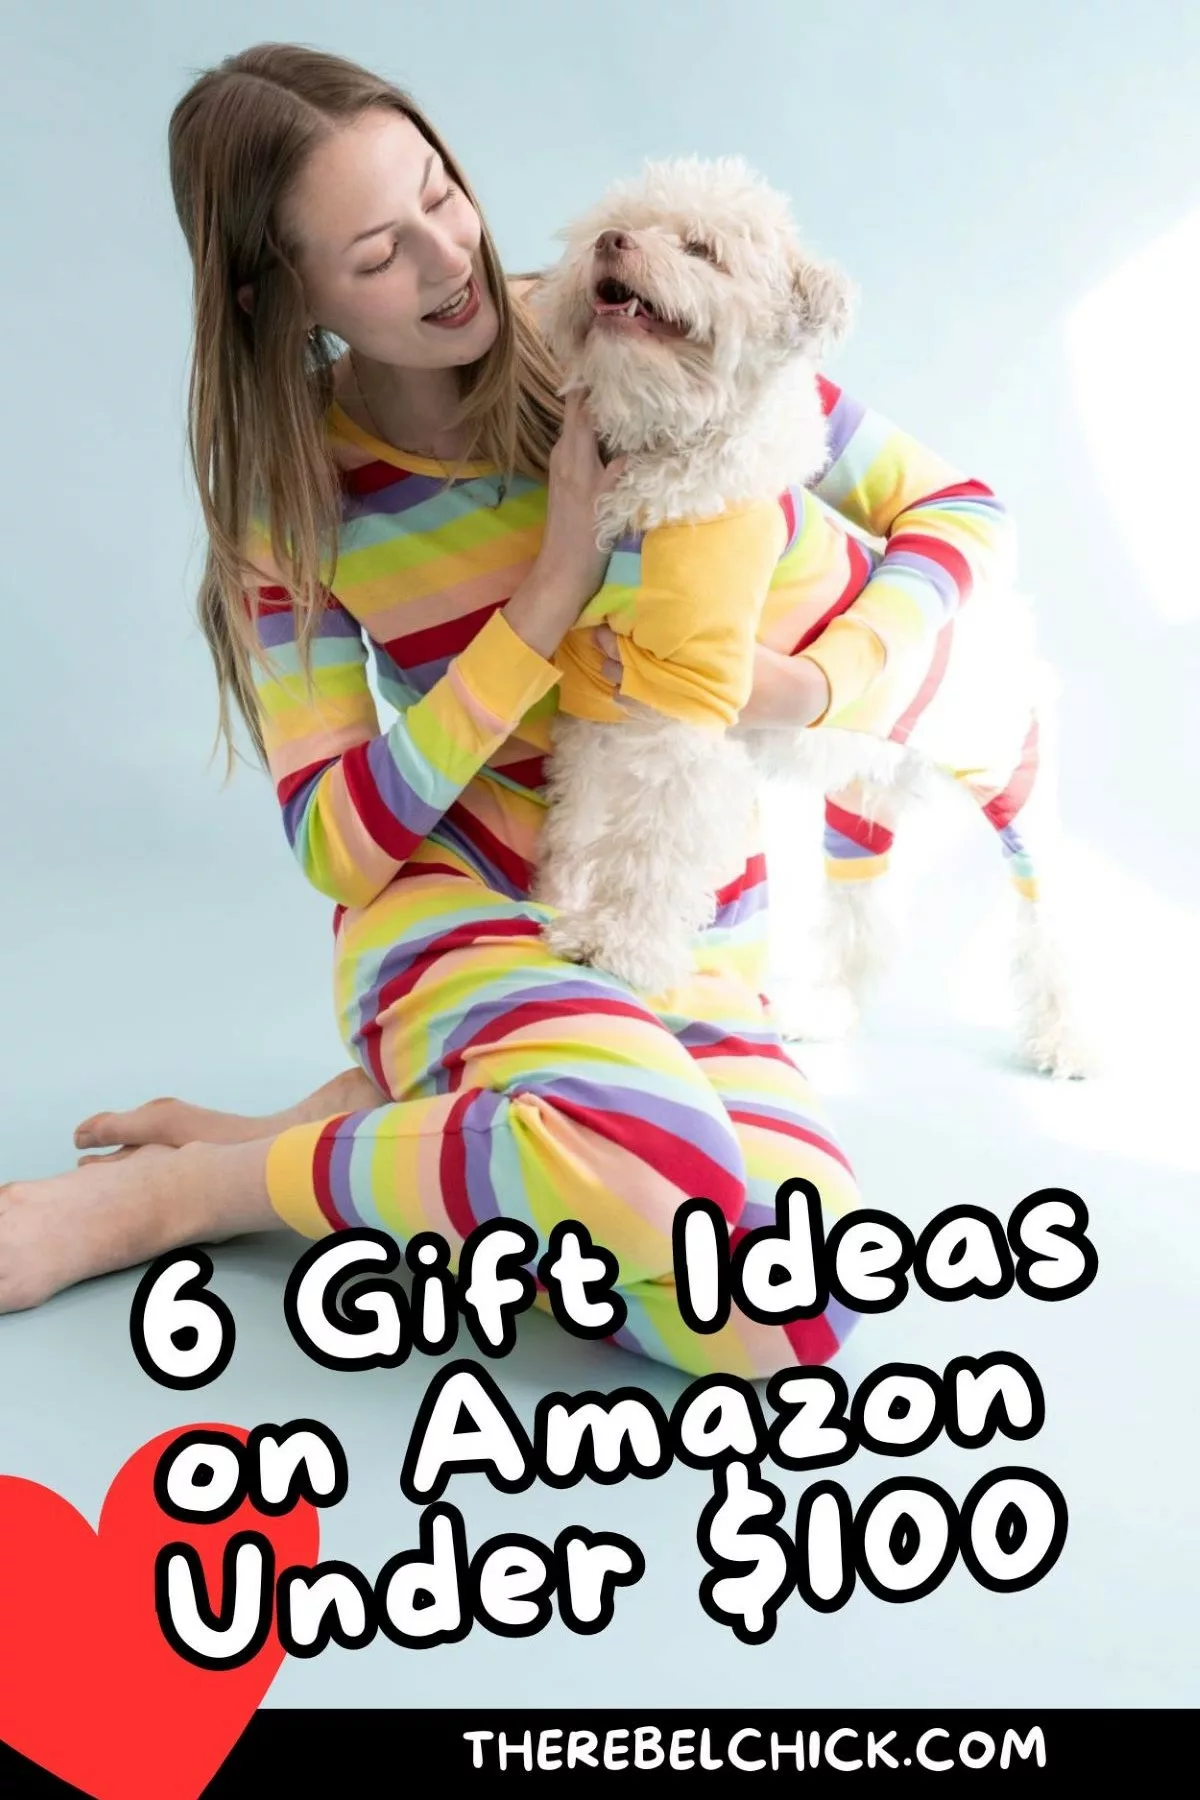 6 Gift Ideas on Amazon Under $100